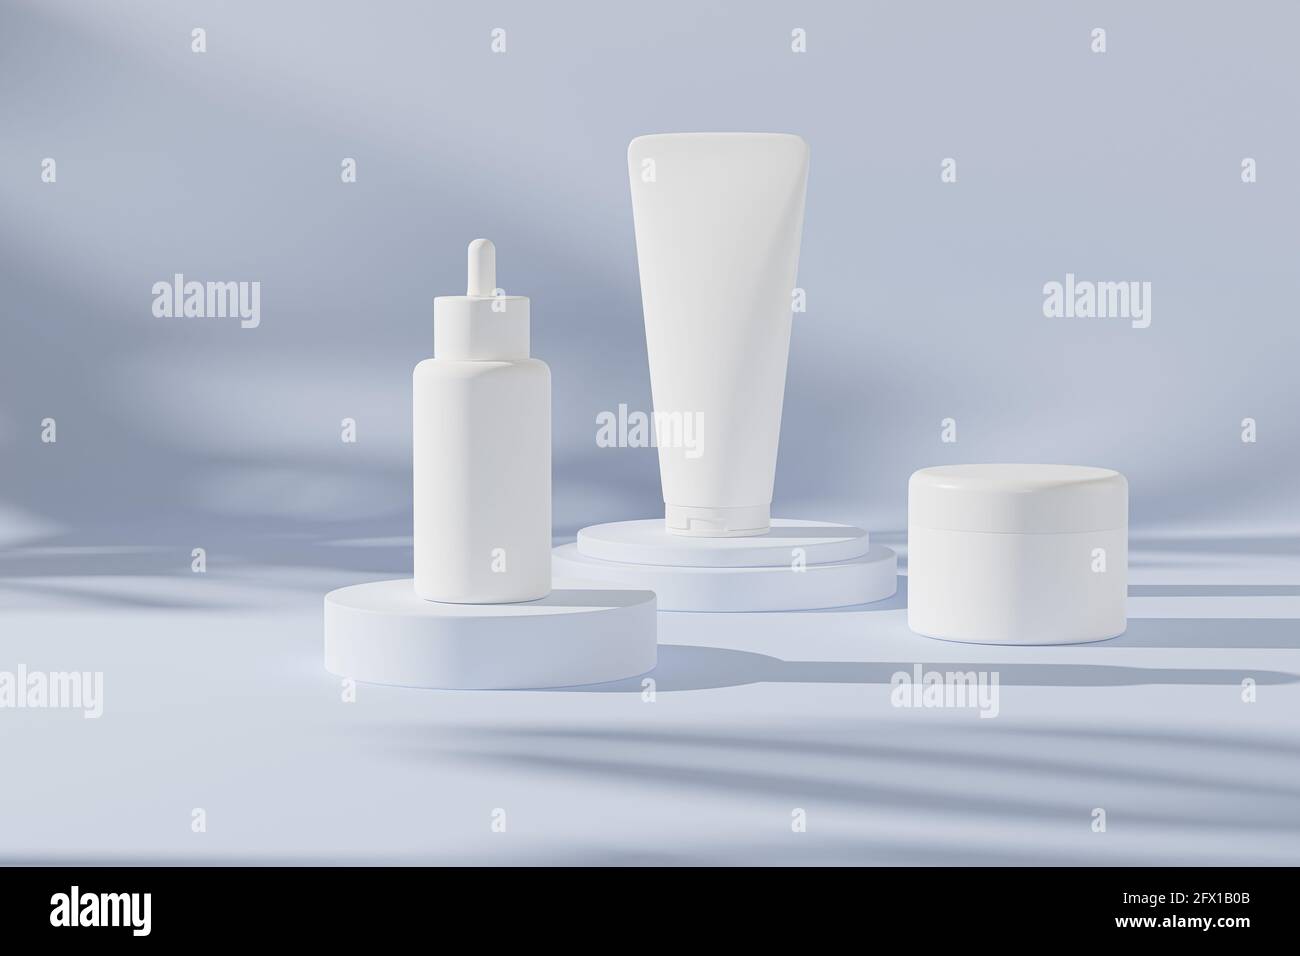 Flacon compte-gouttes, tube de lotion et pot à crème Mockup pour produits cosmétiques ou publicité sur fond bleu neutre, rendu d'illustration 3d Banque D'Images